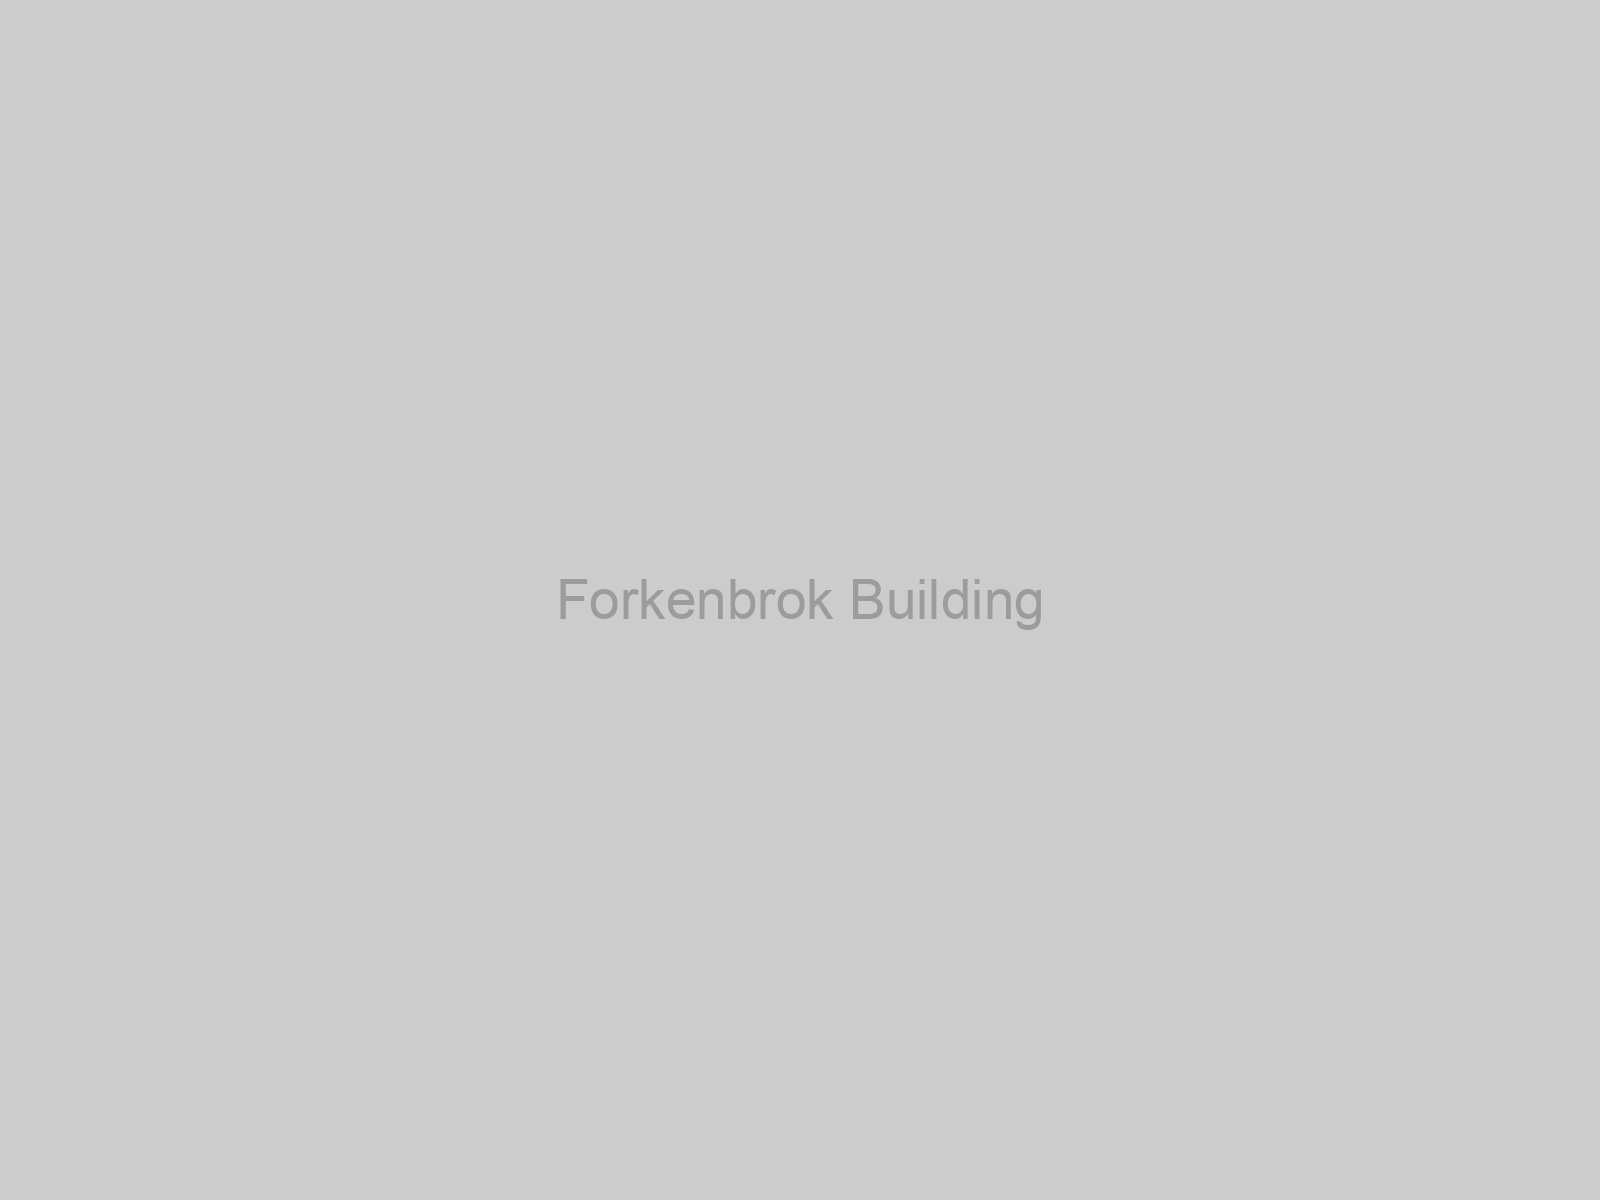 Forkenbrok Building